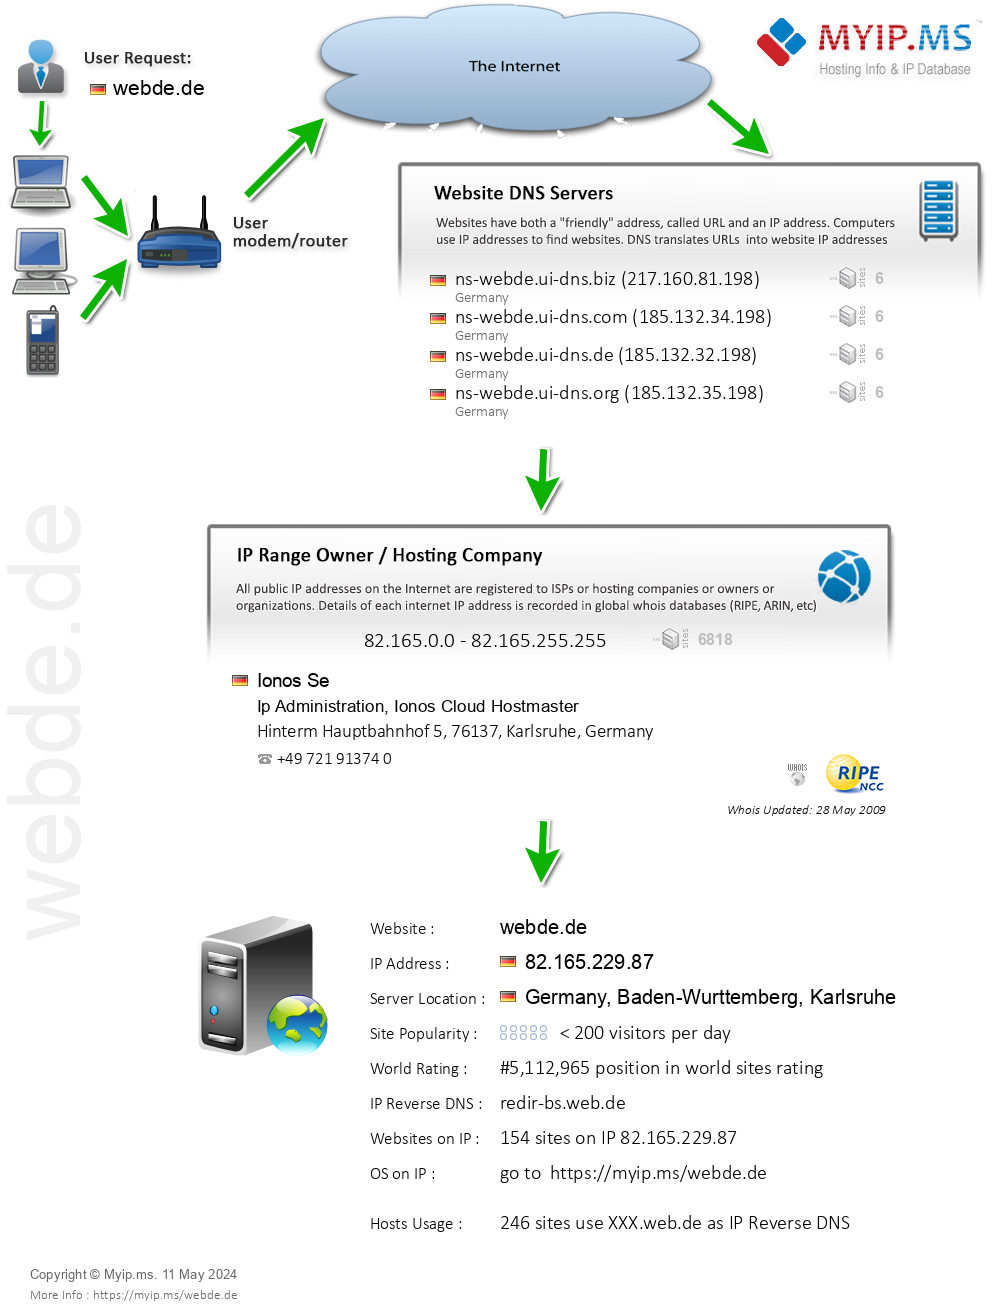 Webde.de - Website Hosting Visual IP Diagram